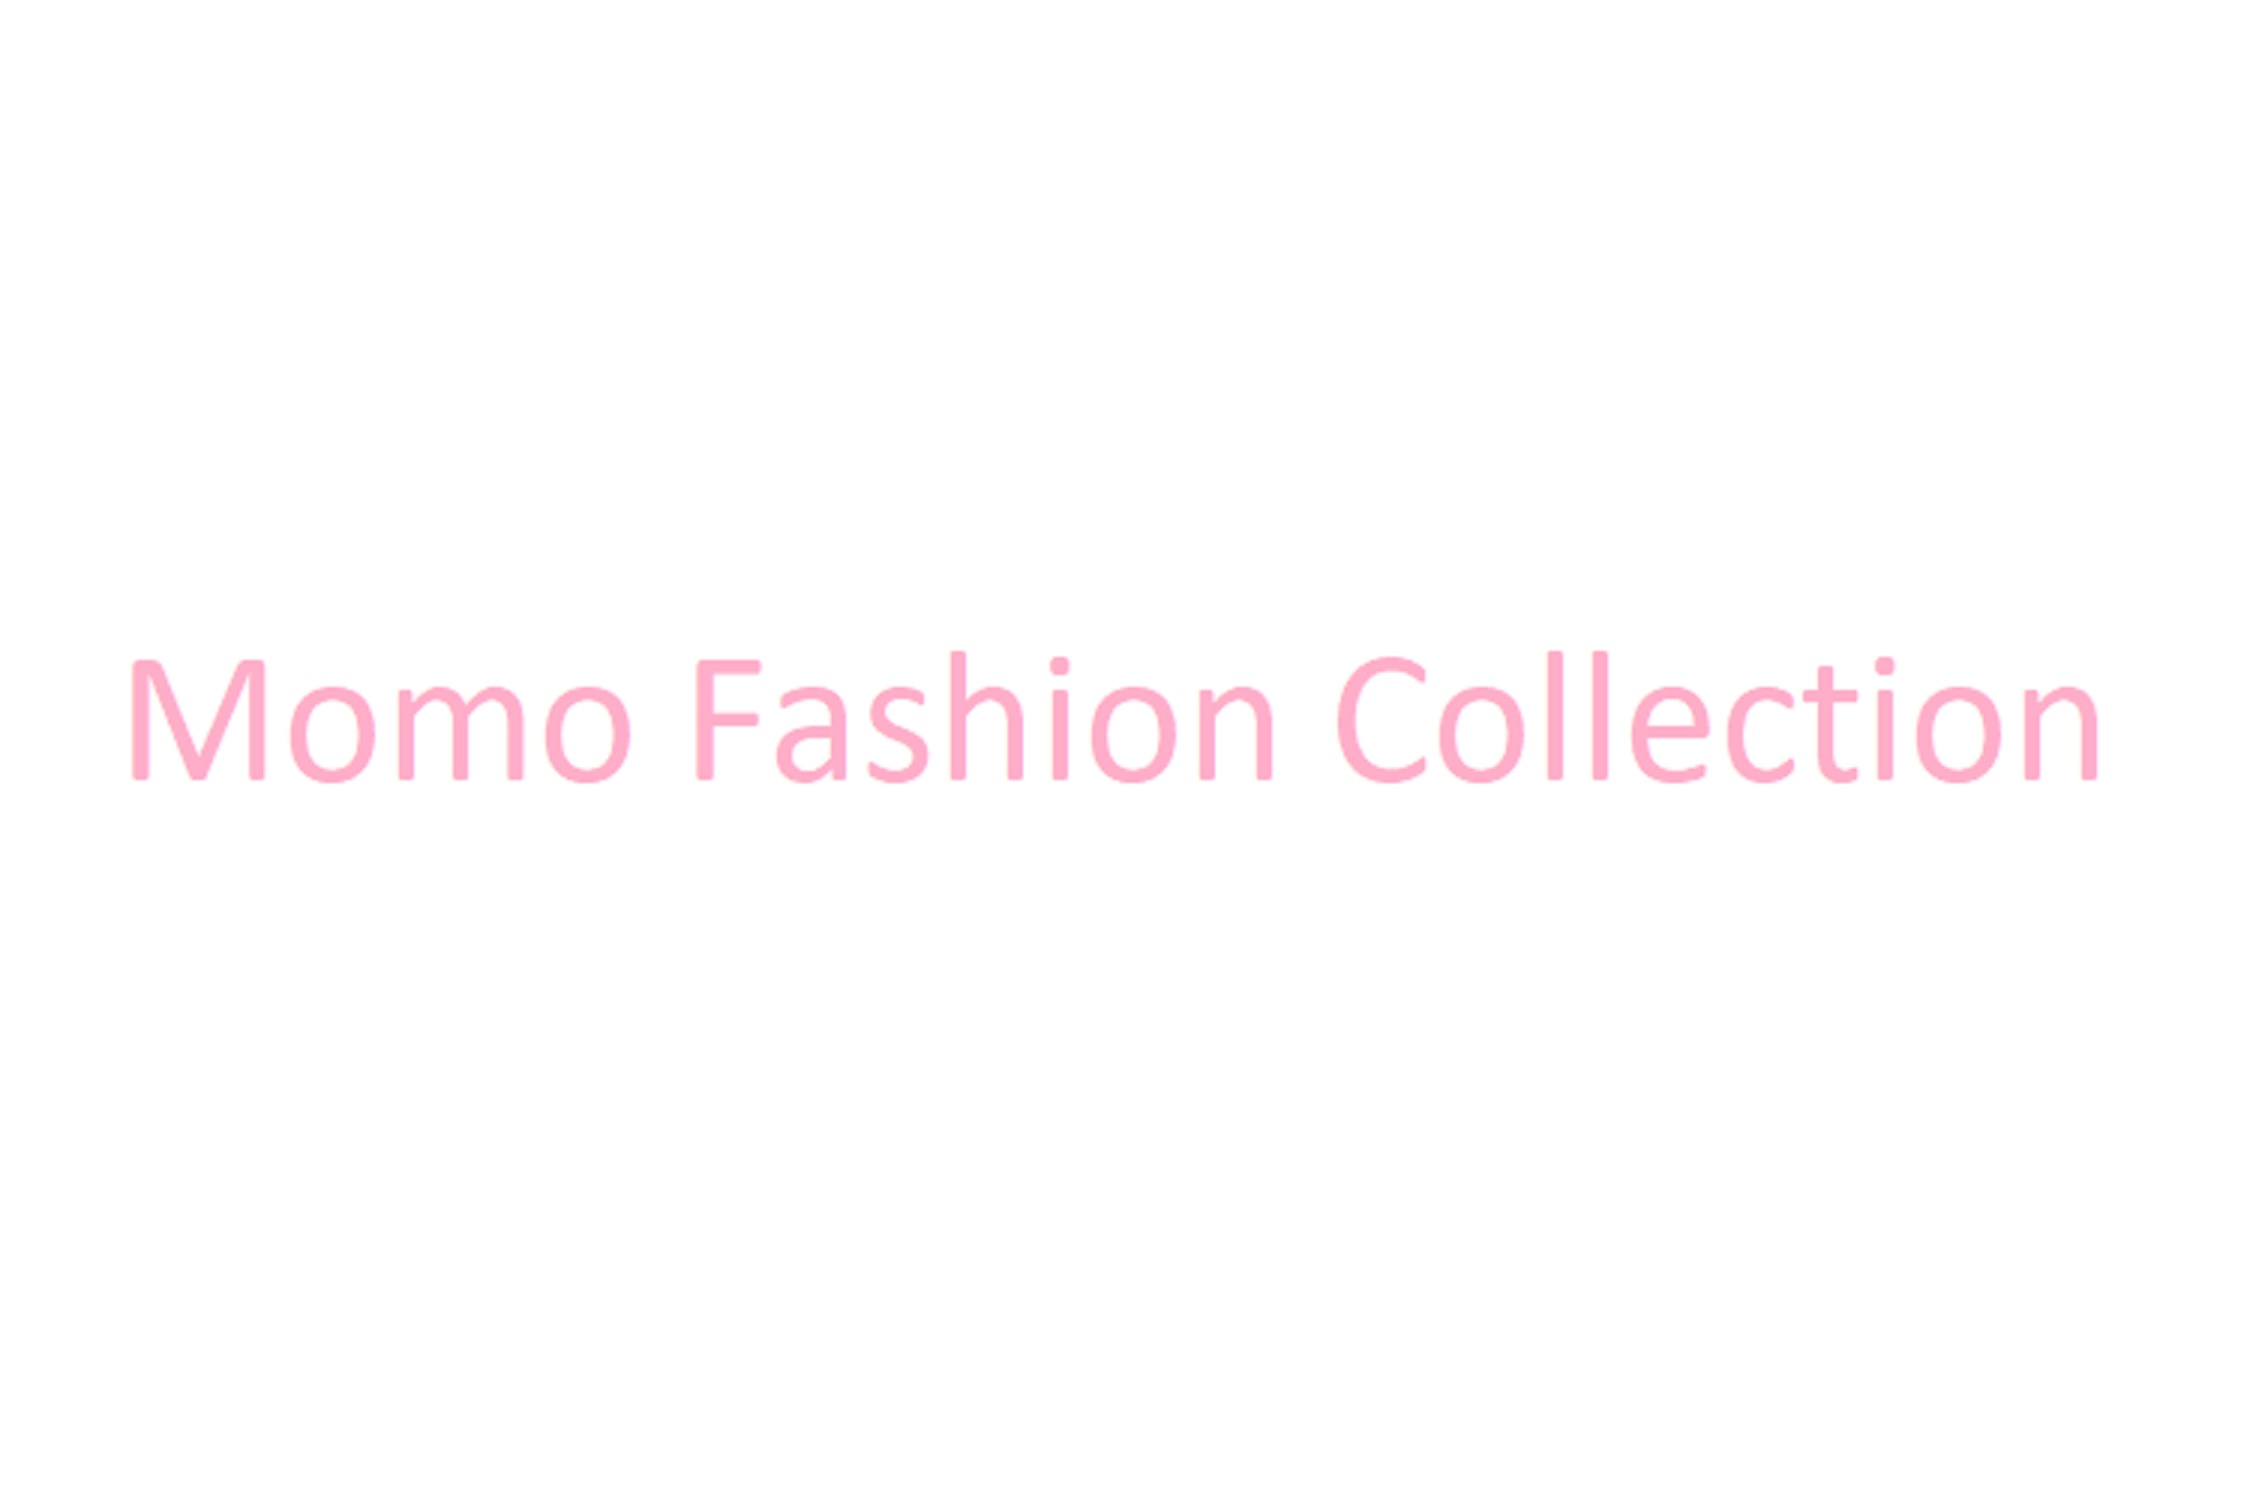 Momo Fashion Collection Logo